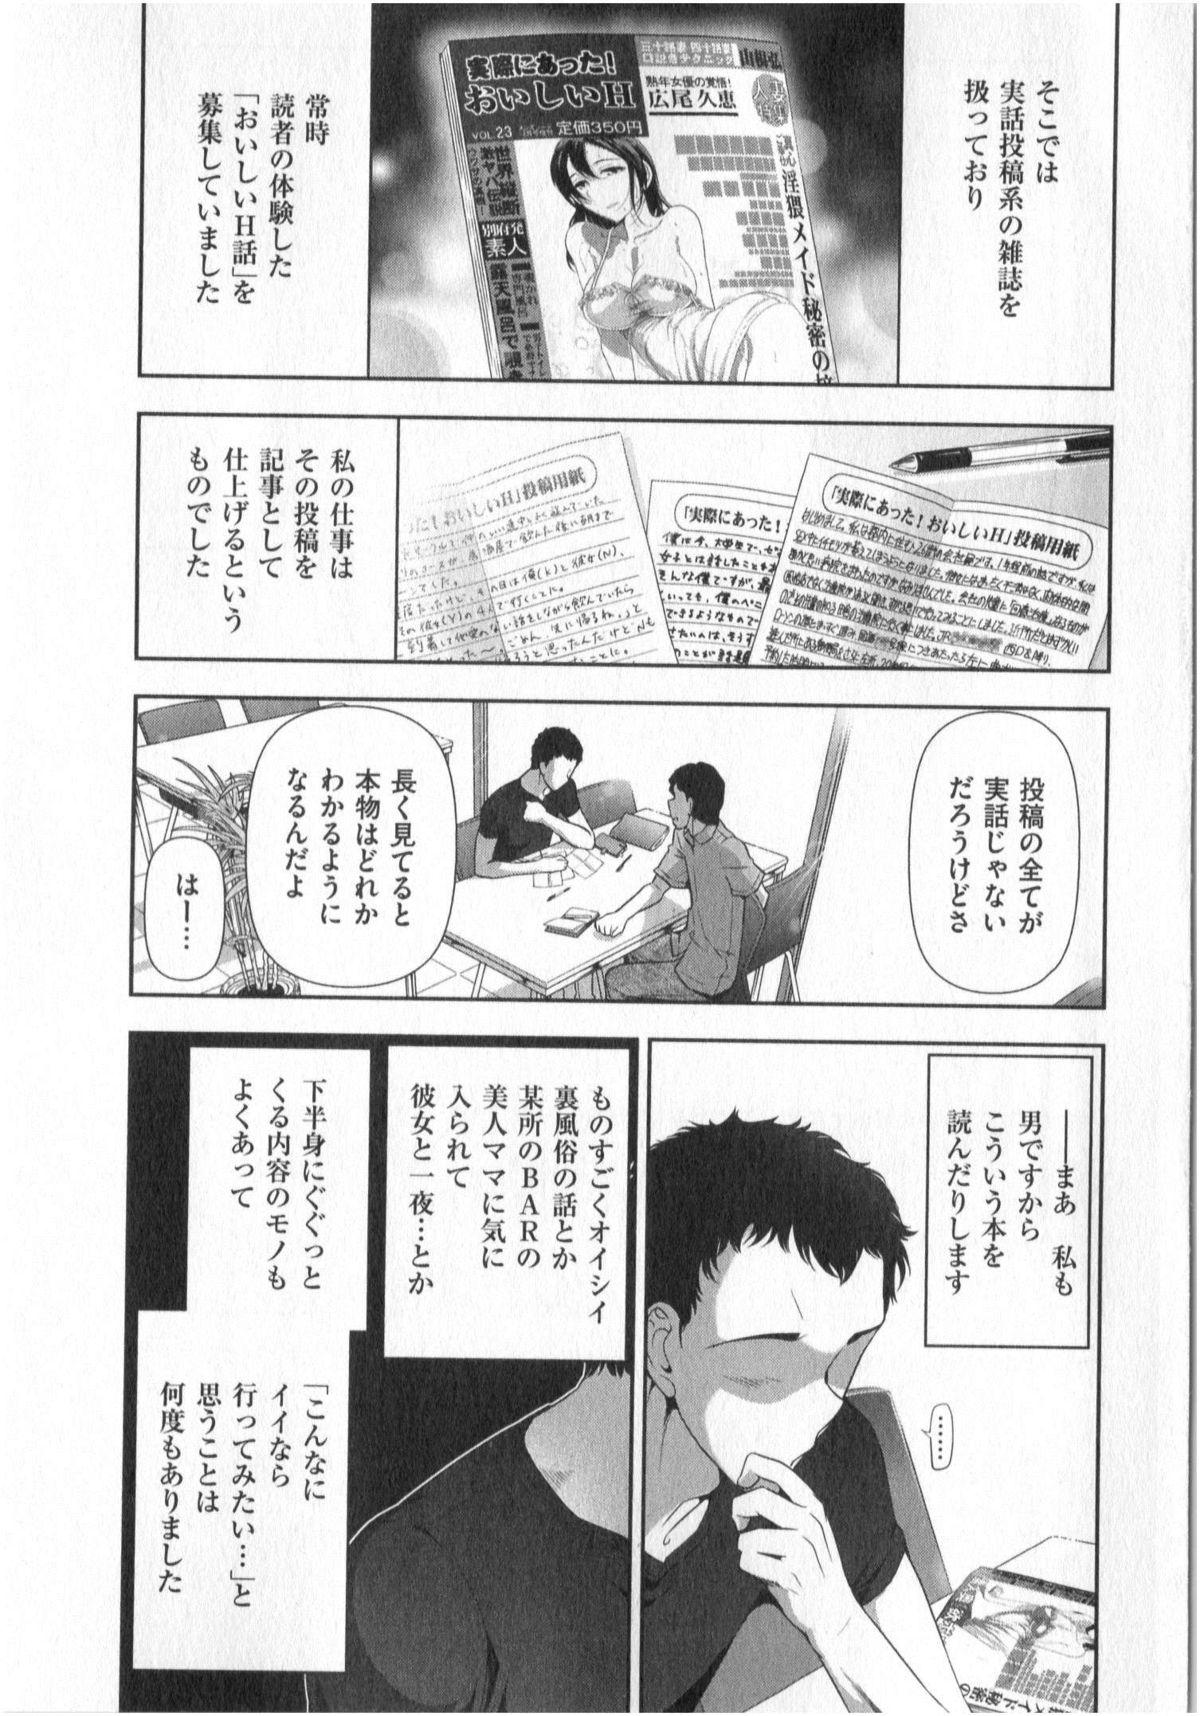 Bigcock Yonimo Ecchi na Toshidensetsu vol. 01 Amatuer - Page 7